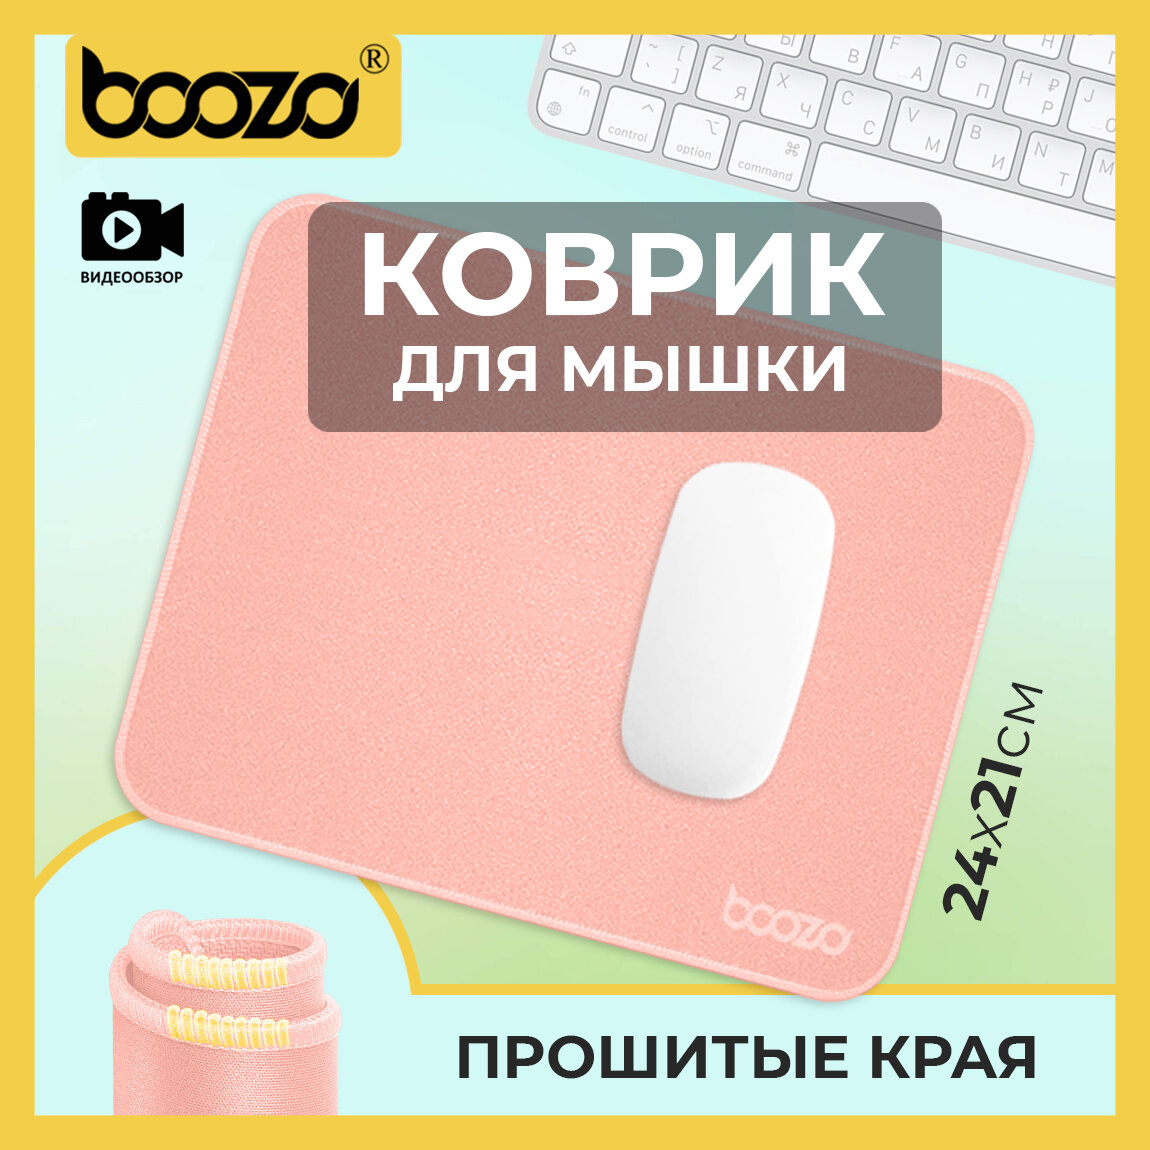 Коврик для мышки маленький игровой BOOZO mini, тканевый коврик для мыши, коврик для мышки компьютерный розовый